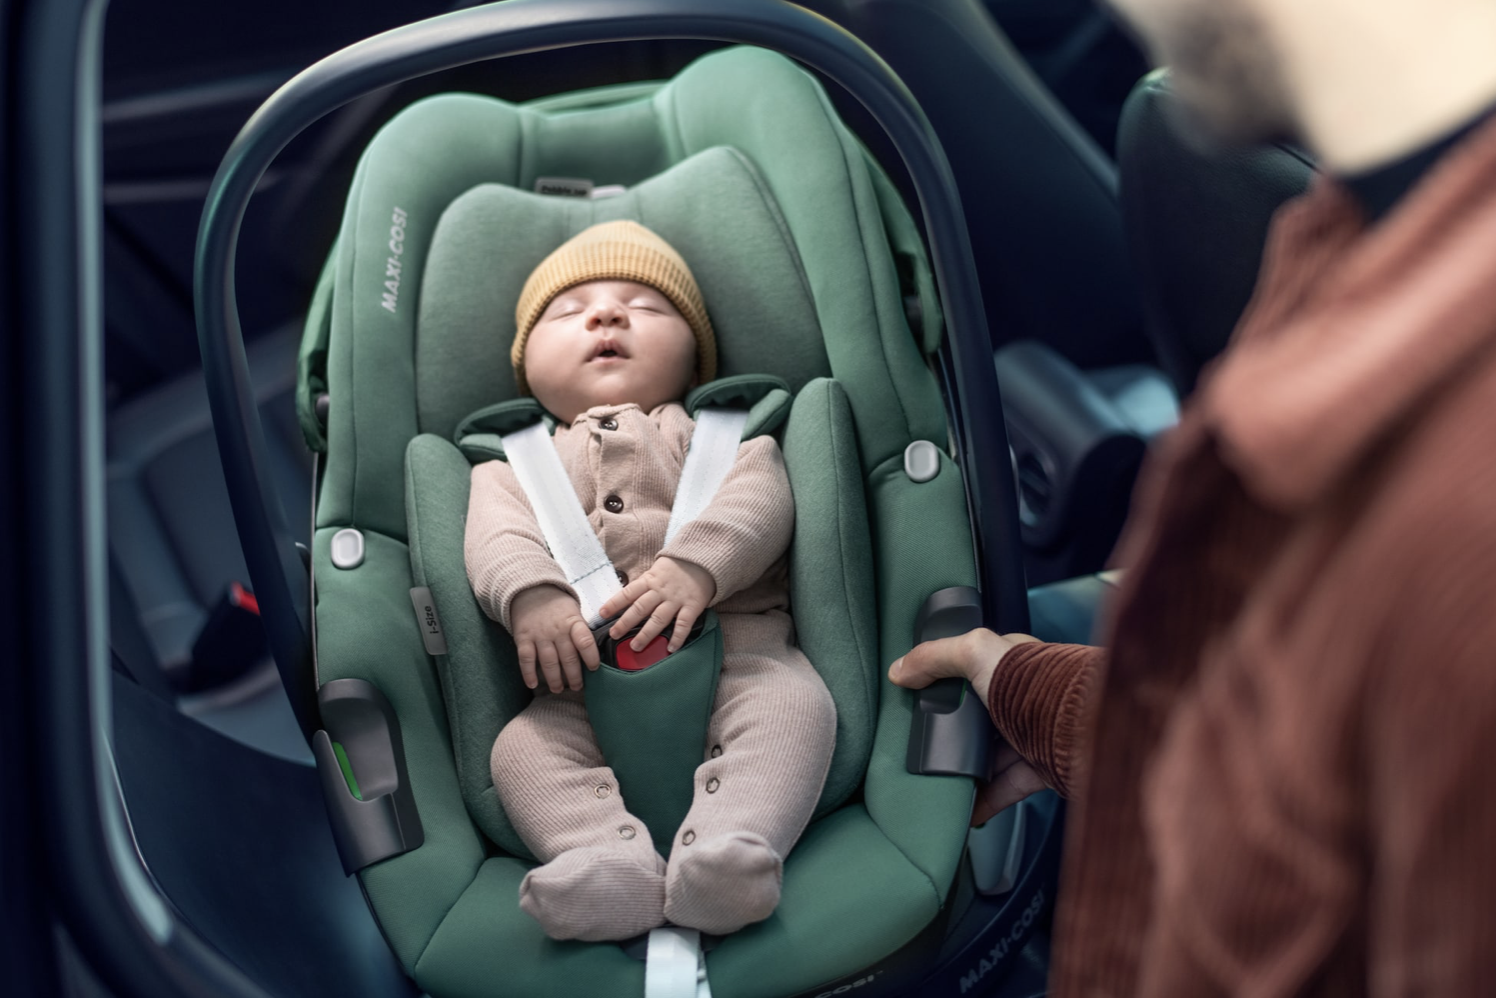 Maxi-Cosi Pebble 360 - Cadeira auto para bebé